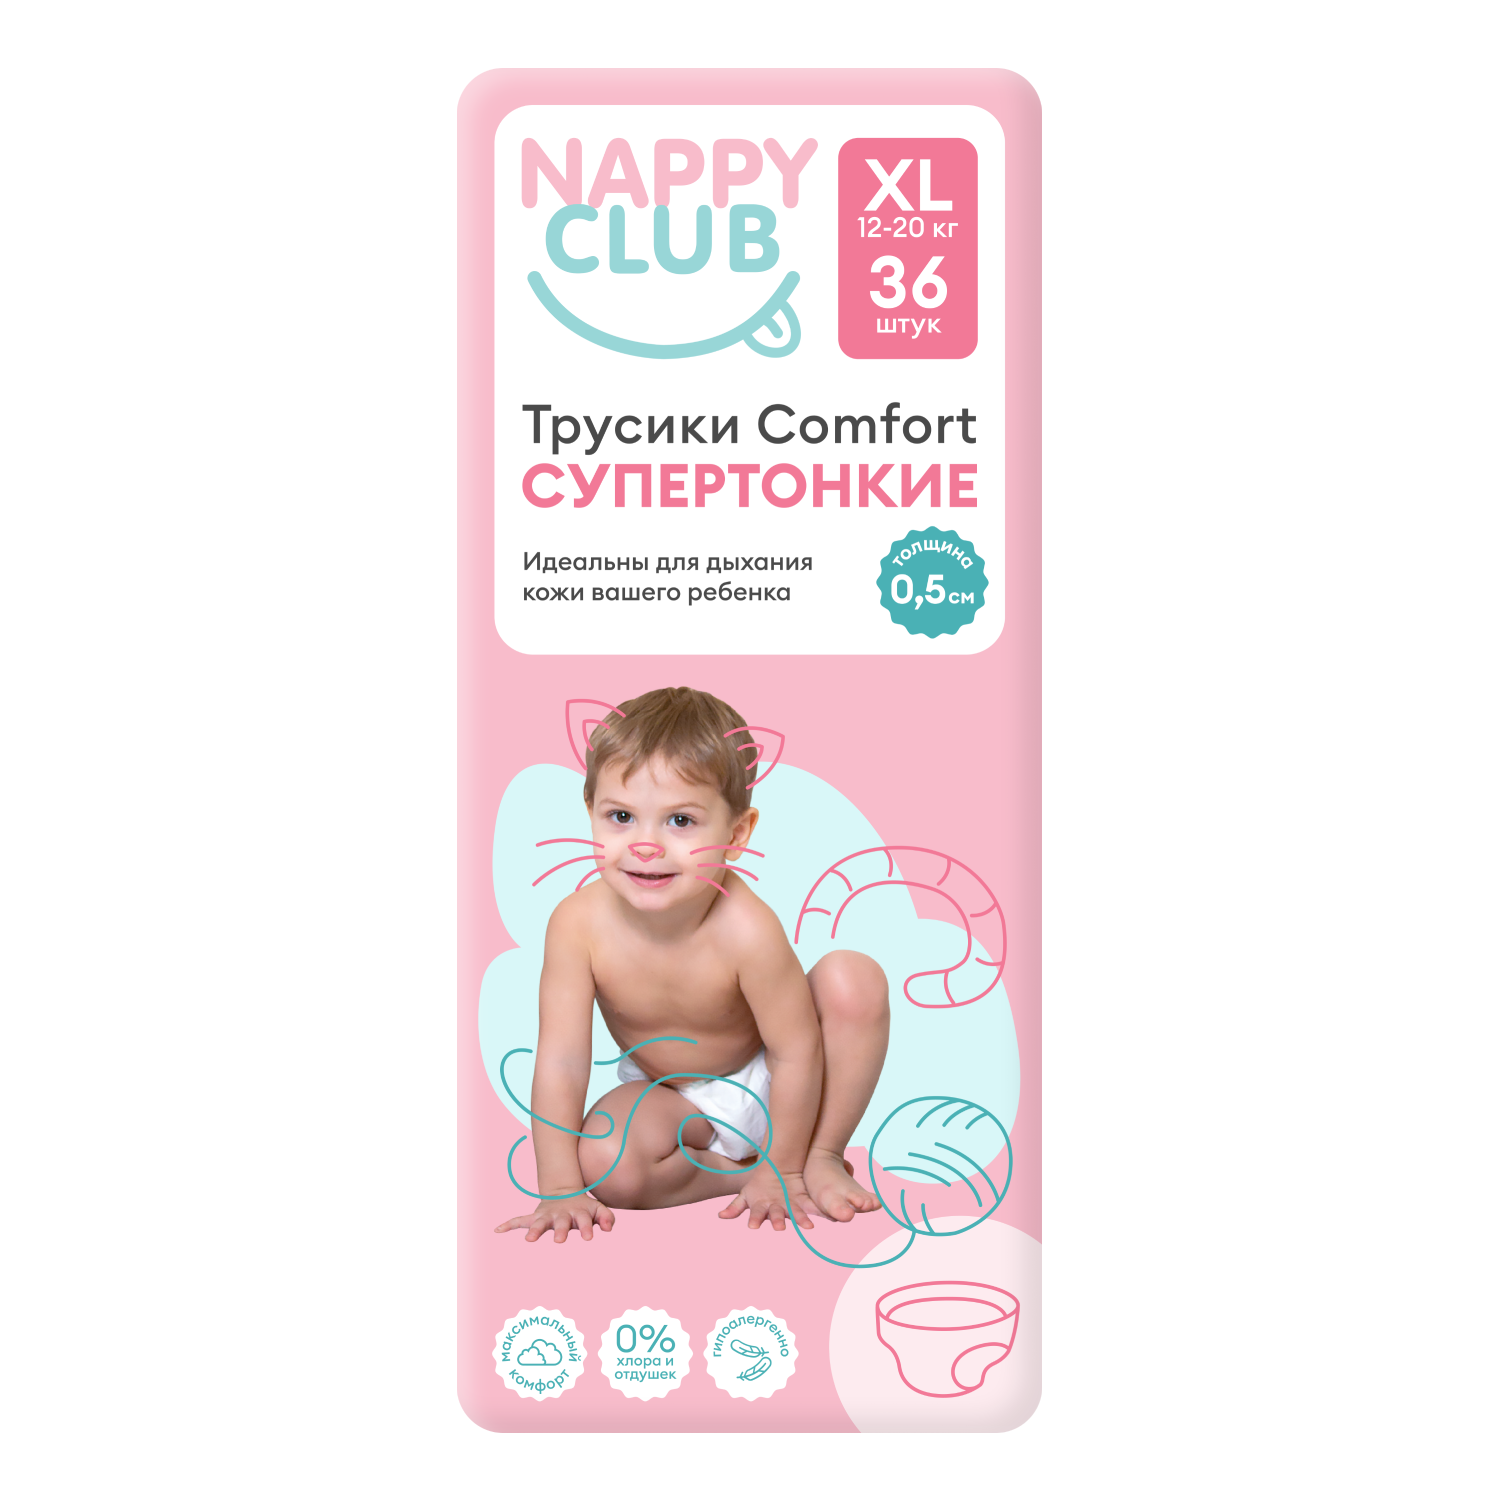 NappyClub трусики Comfort дневные супер-тонкие XL (12-20 кг) 36 шт. nappyclub трусики comfort дневные супер тонкие xl 12 20 кг 38 шт